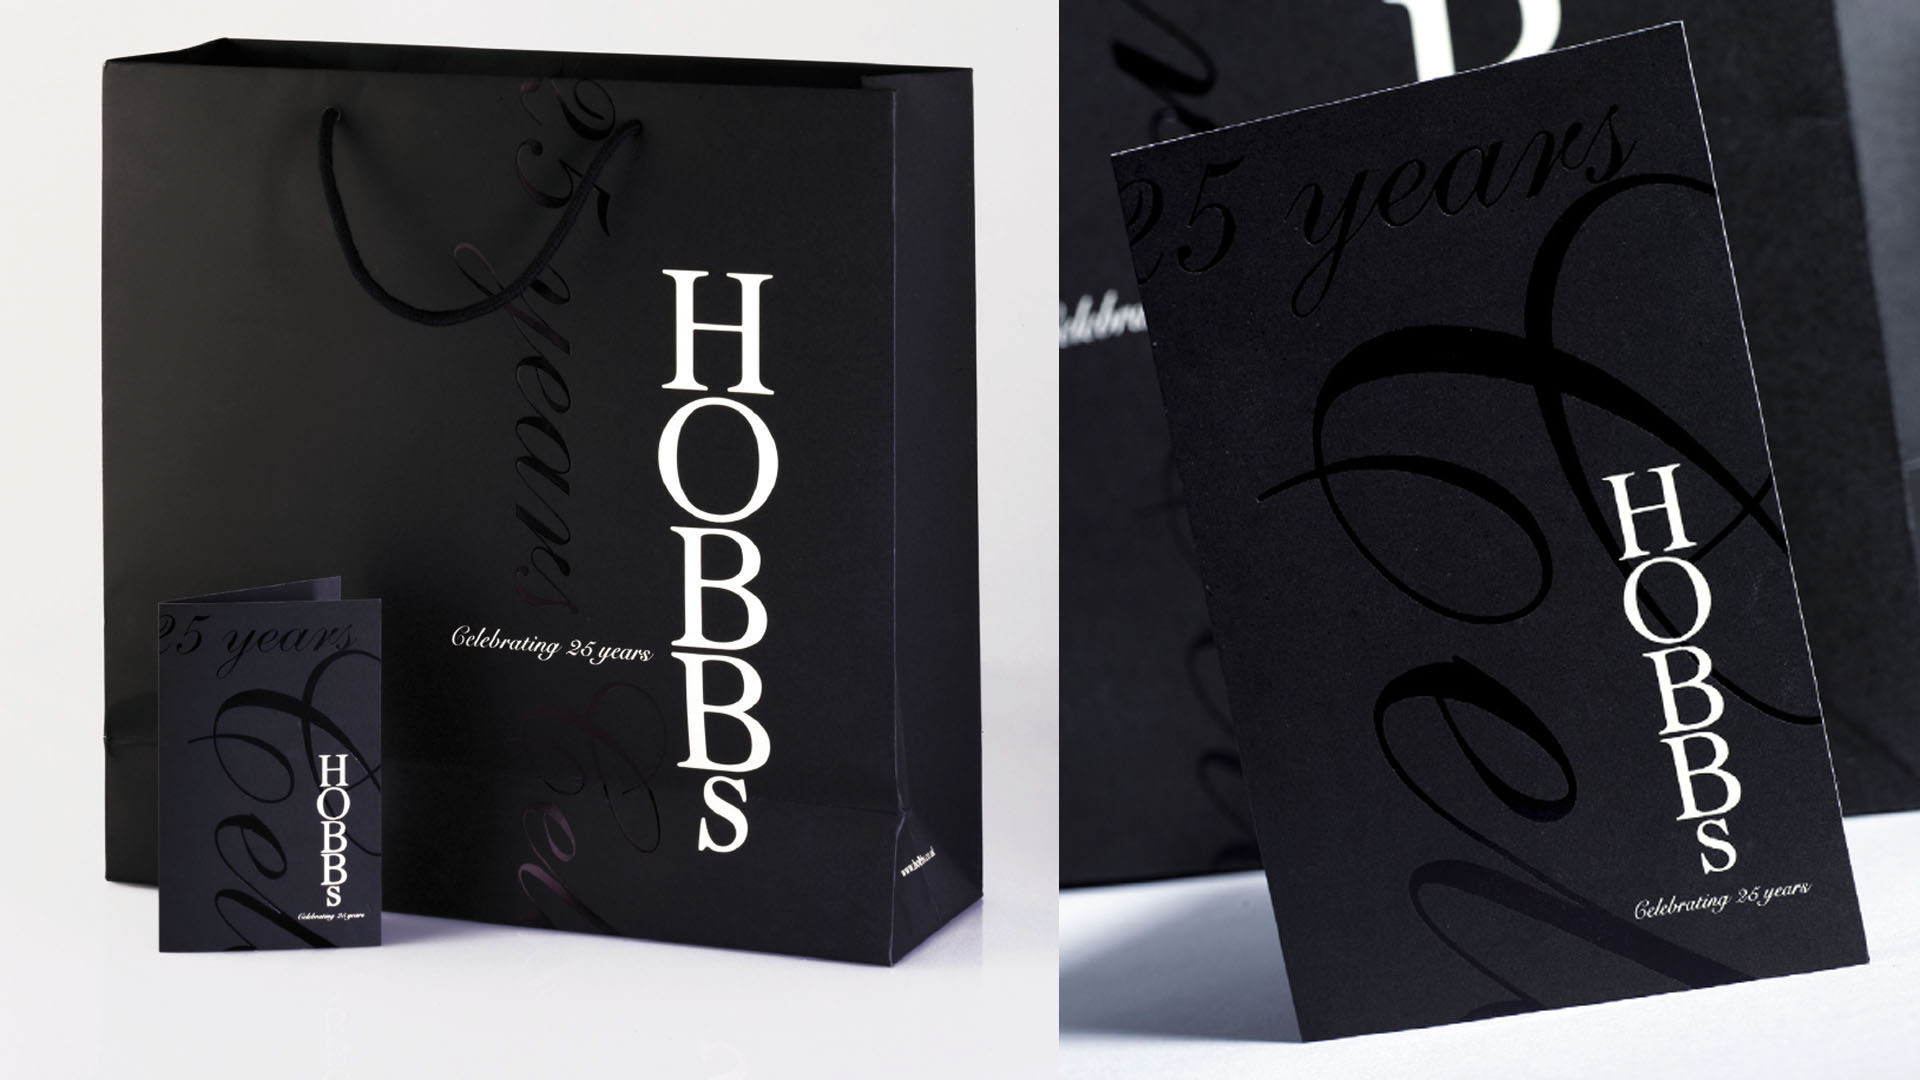 Hobbs_design_packaging